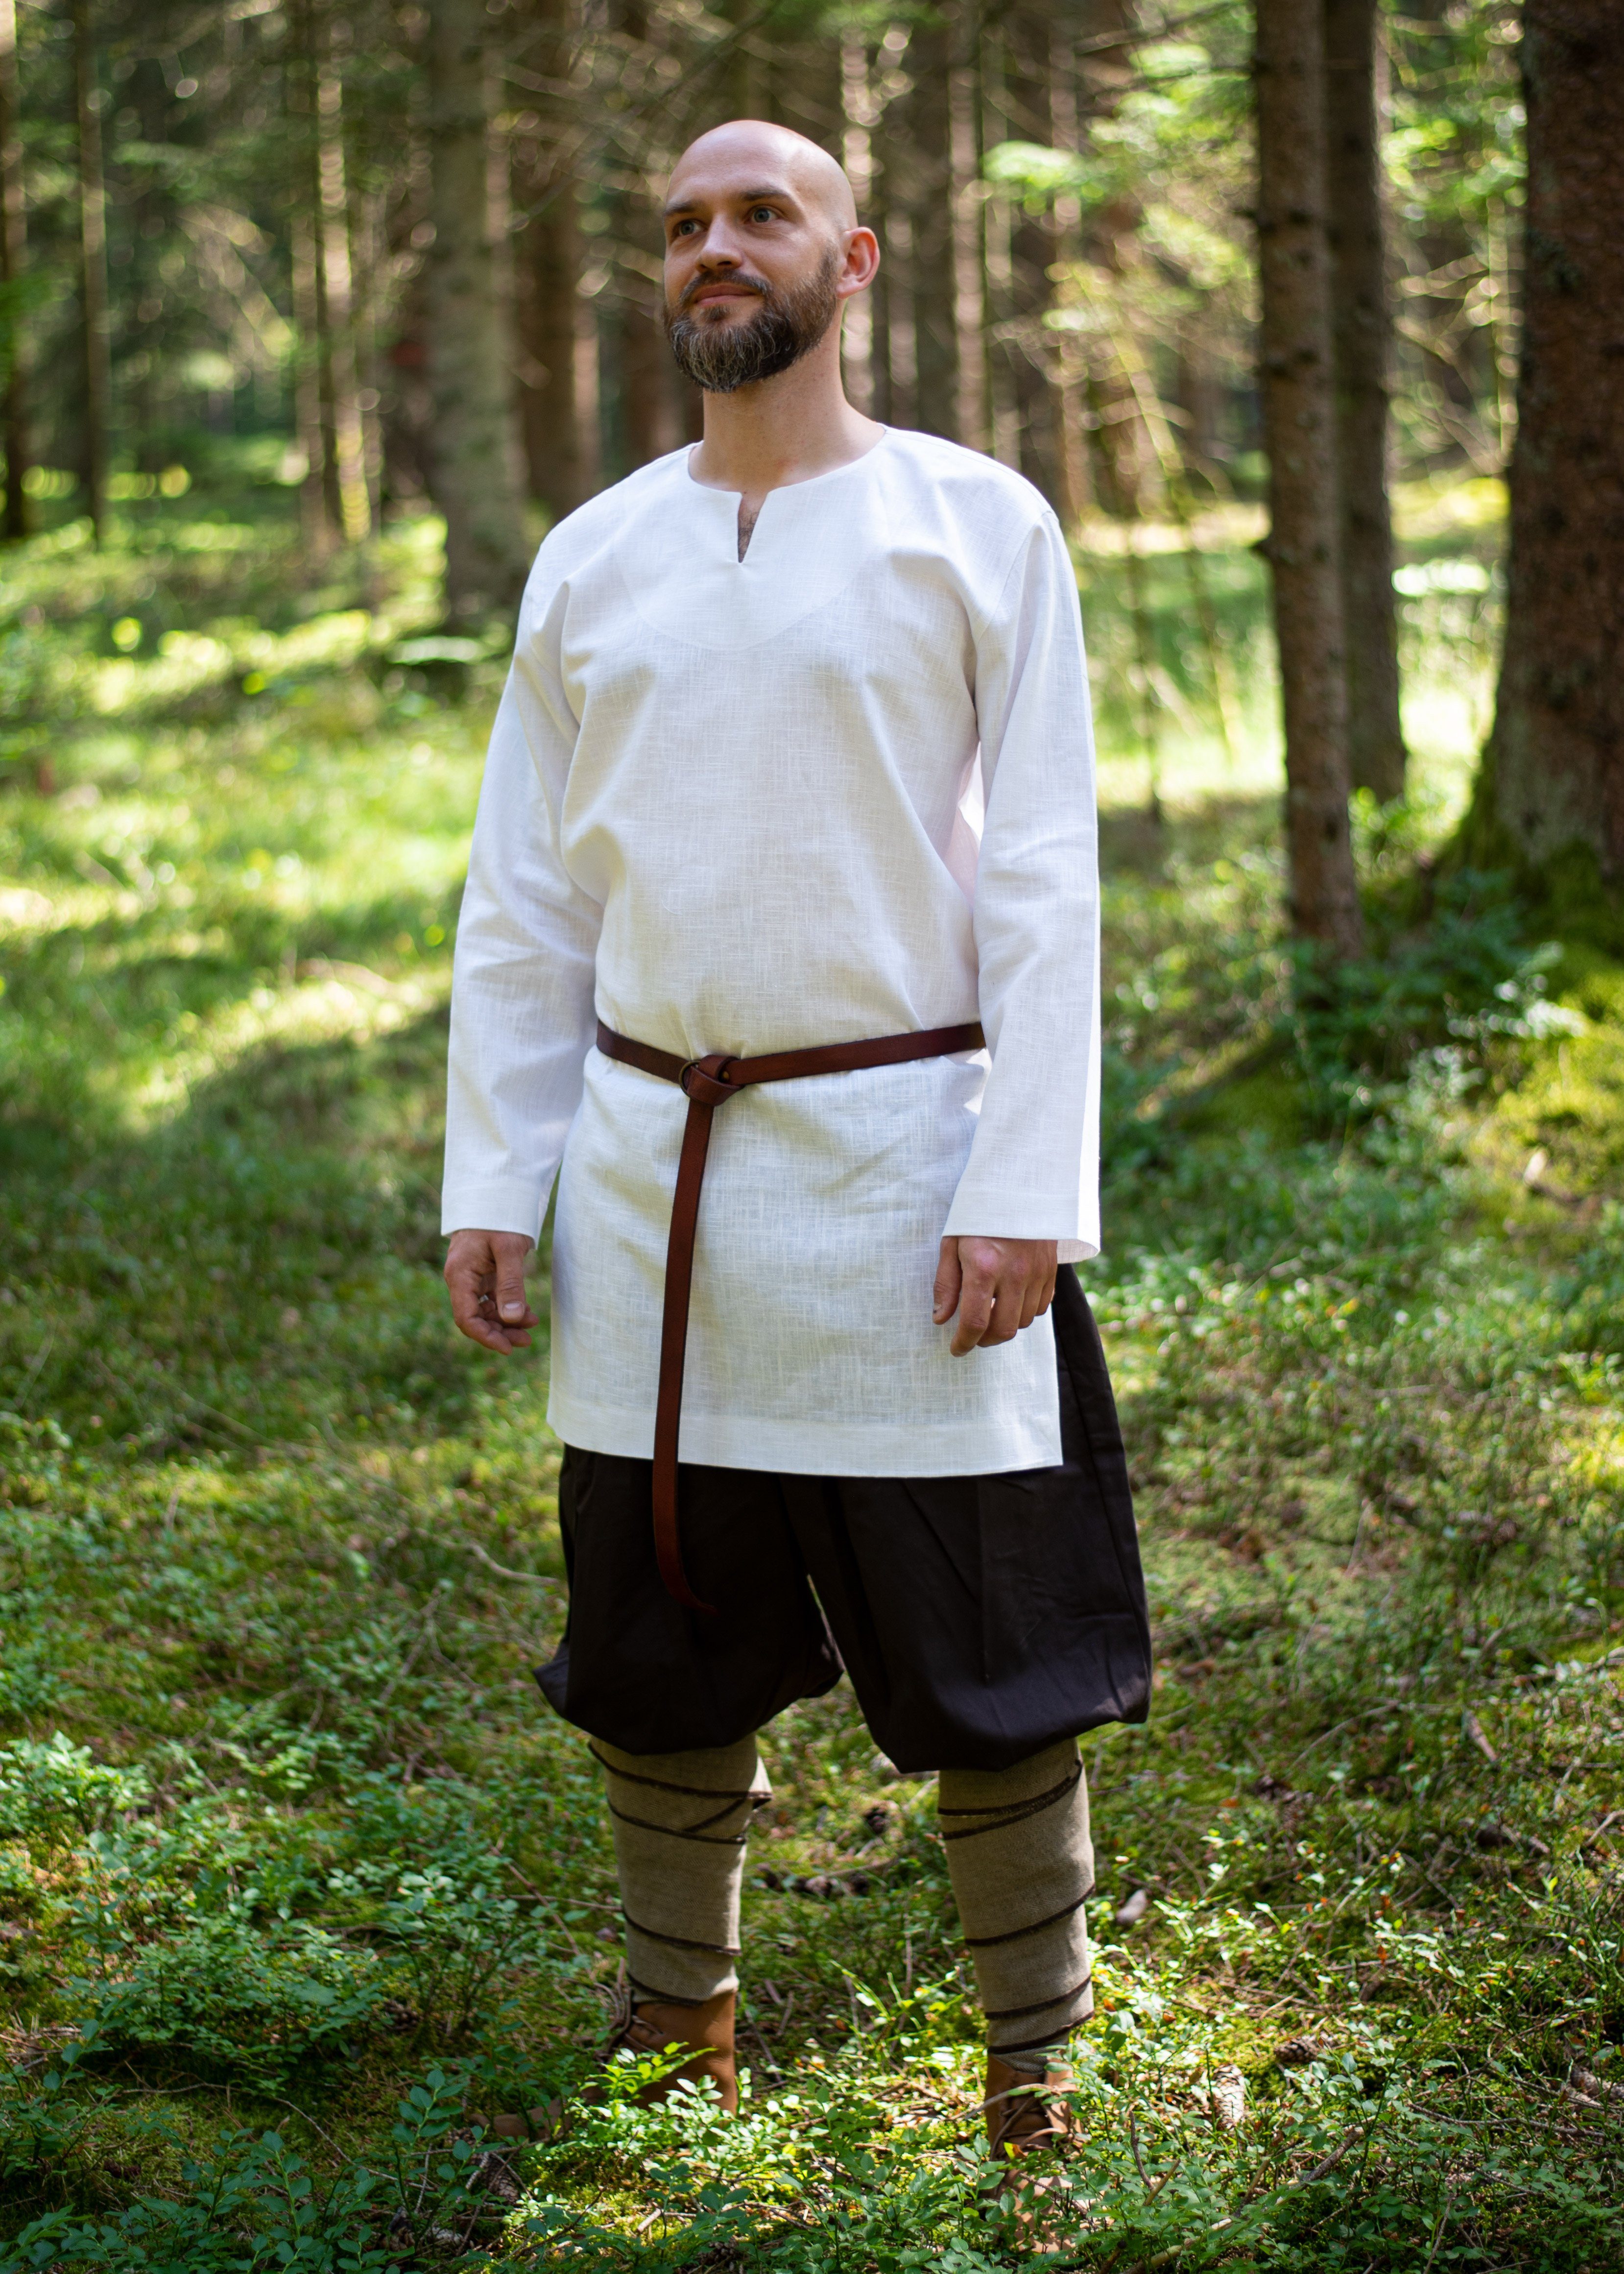 Vehi Mercatus Wikinger-Kostüm Wikinger Tunika oder Untertunika aus Leinen weiß Langarm